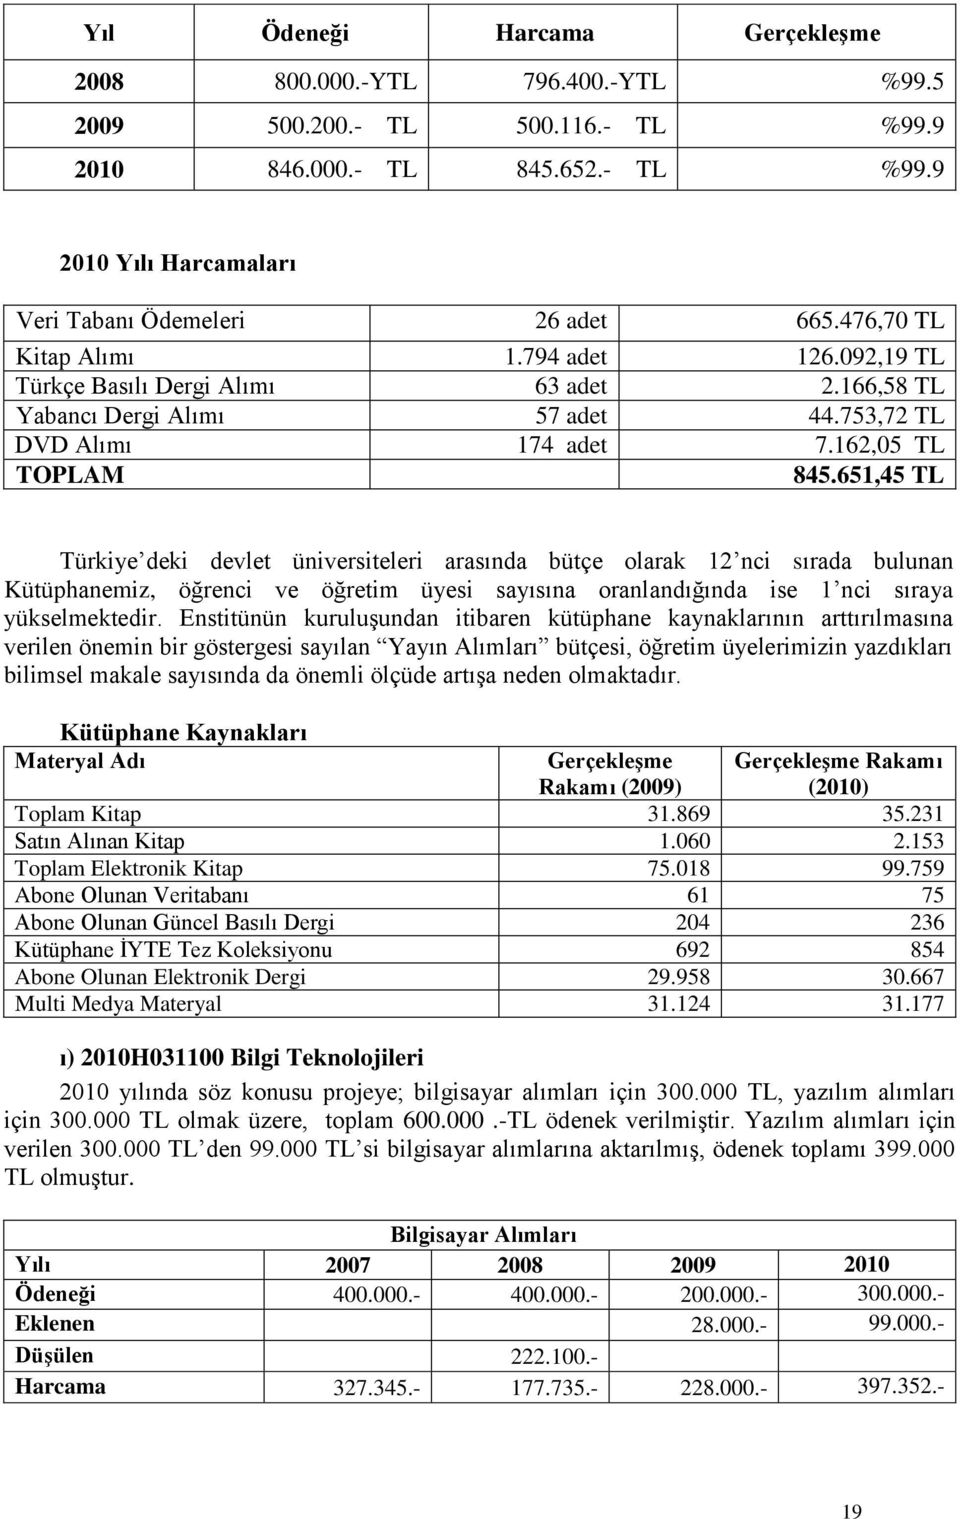 651,45 TL Türkiye deki devlet üniversiteleri arasında bütçe olarak 12 nci sırada bulunan Kütüphanemiz, öğrenci ve öğretim üyesi sayısına oranlandığında ise 1 nci sıraya yükselmektedir.